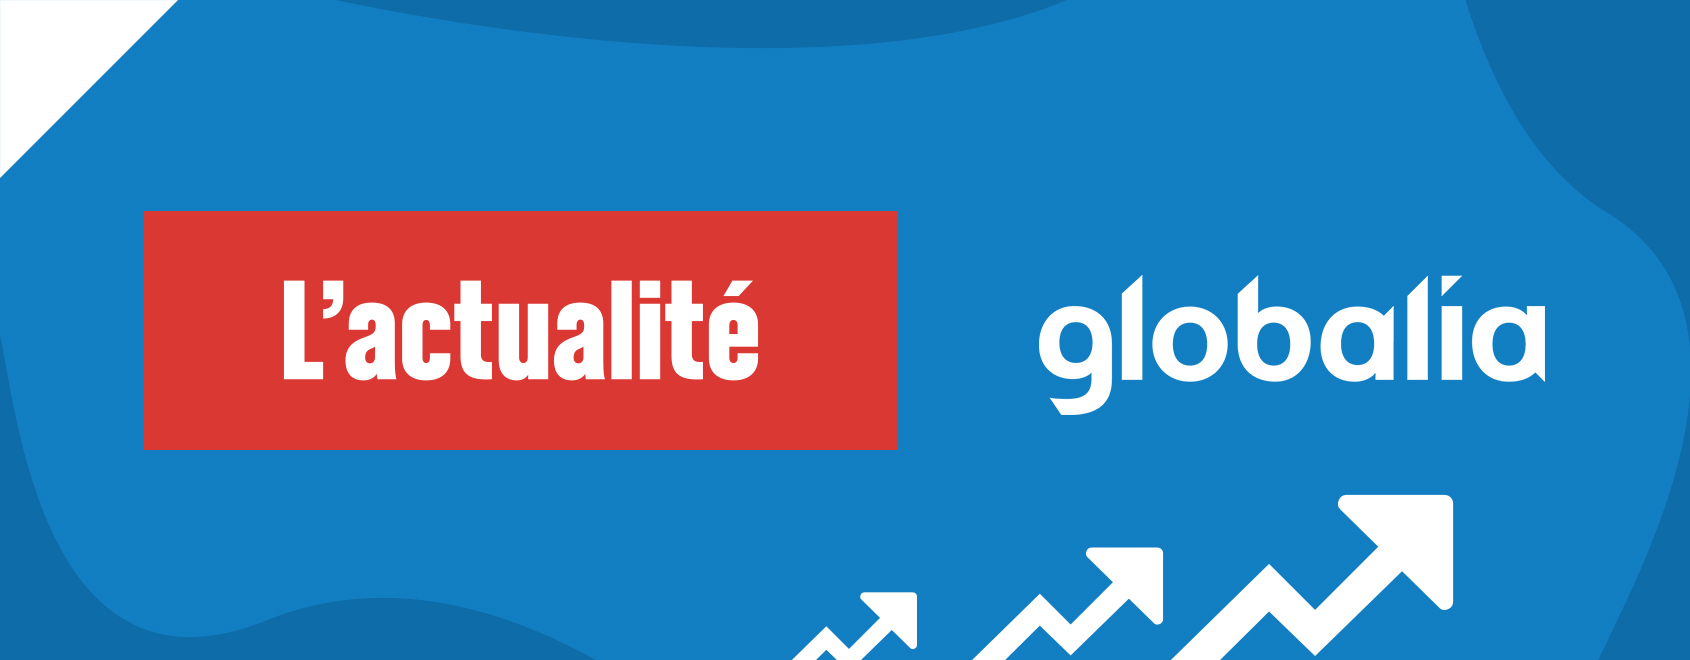 Globalia, leader de la croissance 2018 selon L’Actualité!